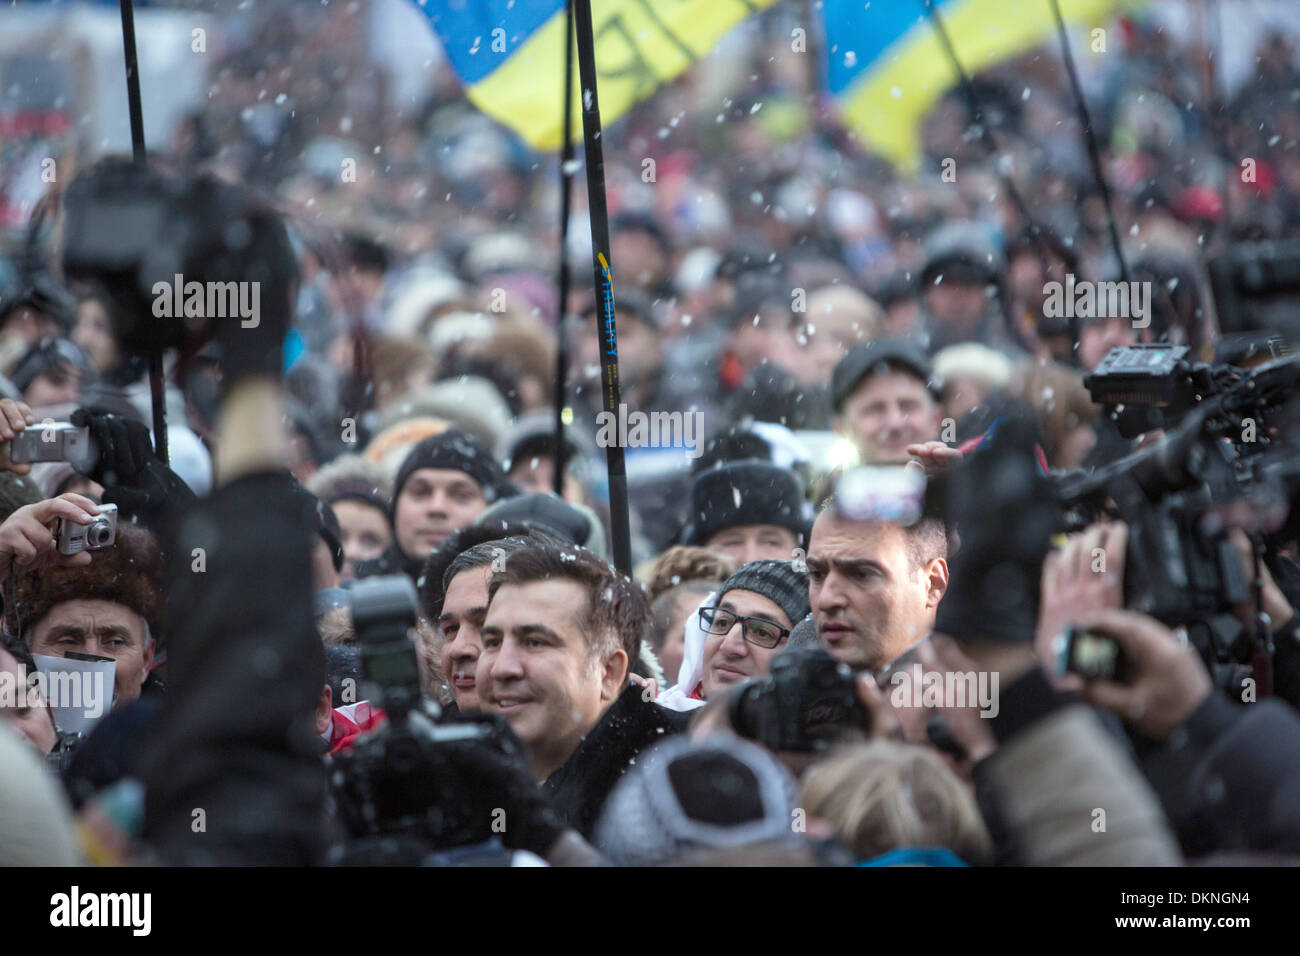 Kiev, Urkaine. 7 dic, 2013. Los partidarios de la oposición continúan su protesta como ex presidente Mikheil Saakashvili (3L) empuja a través de la multitud para hablar con los manifestantes en la plaza de la Independencia en Kiev, Urkaine, 7 de diciembre de 2013. Las continuas protestas dirigidas contra el Presidente ucraniano Yanukovitch y objetivo de estrechar las relaciones con la Unión Europea. Foto: Jan A. Nicolas dpa/Alamy Live News Foto de stock